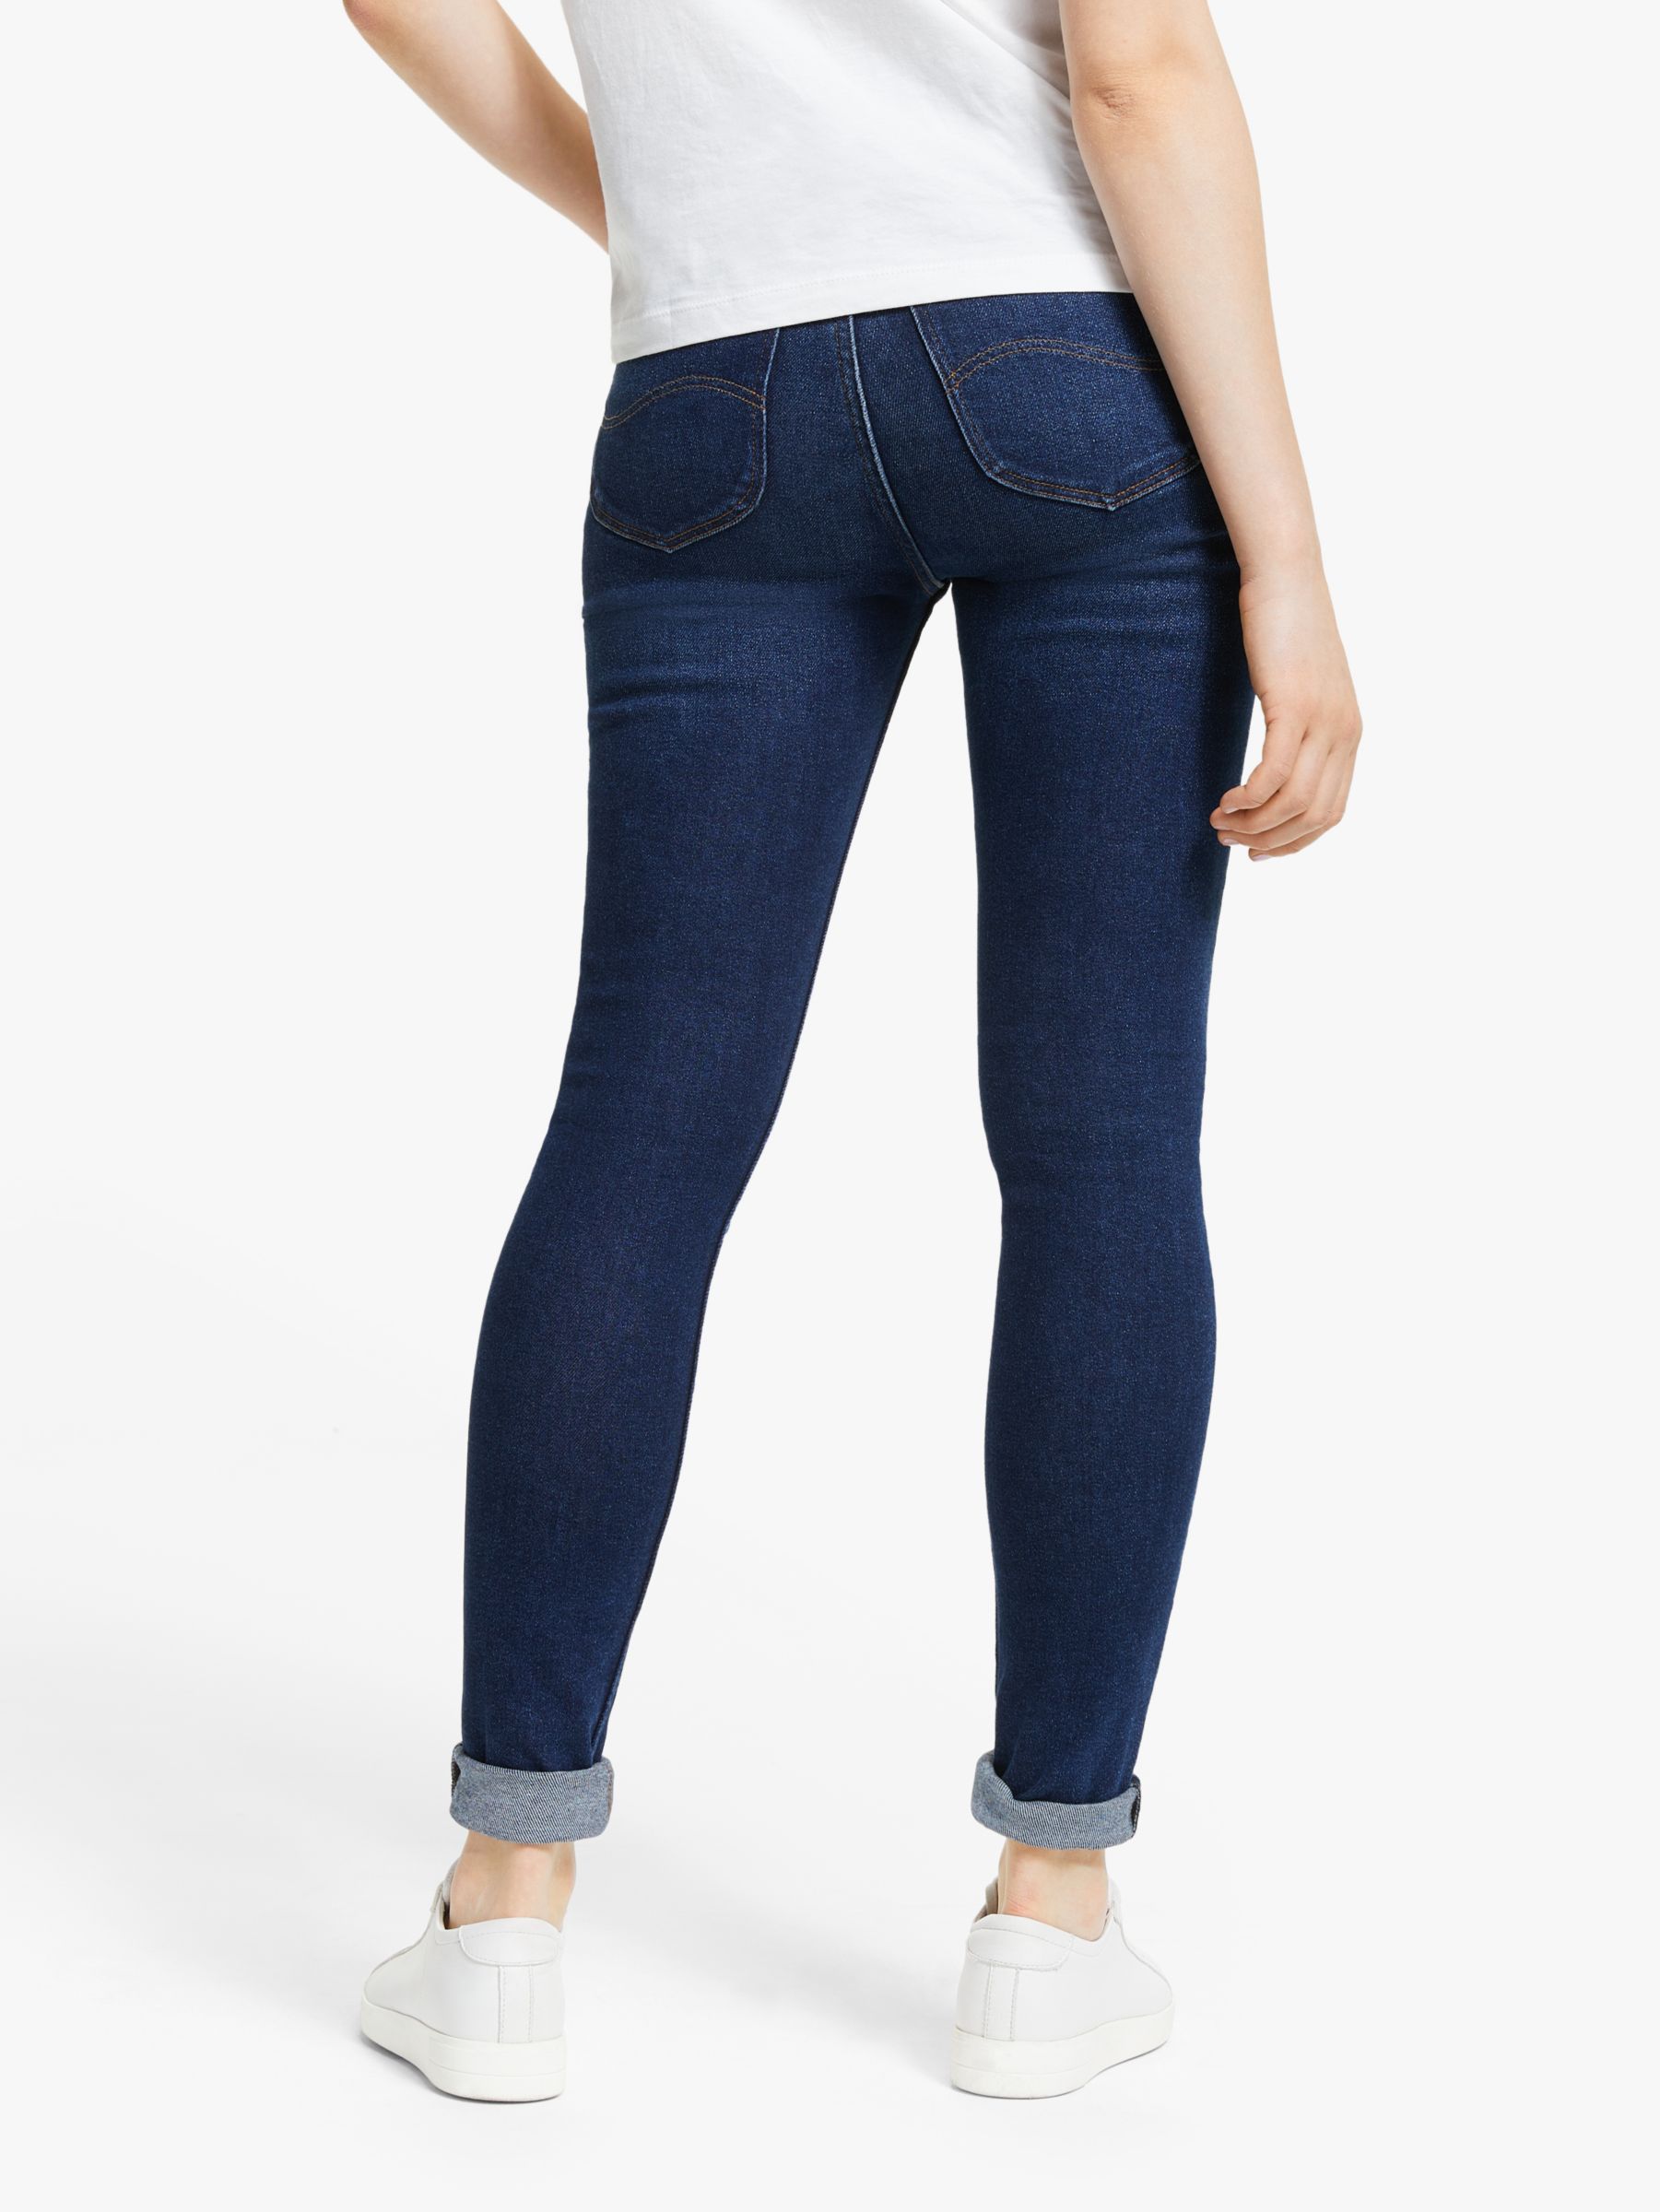 ivy lee jeans